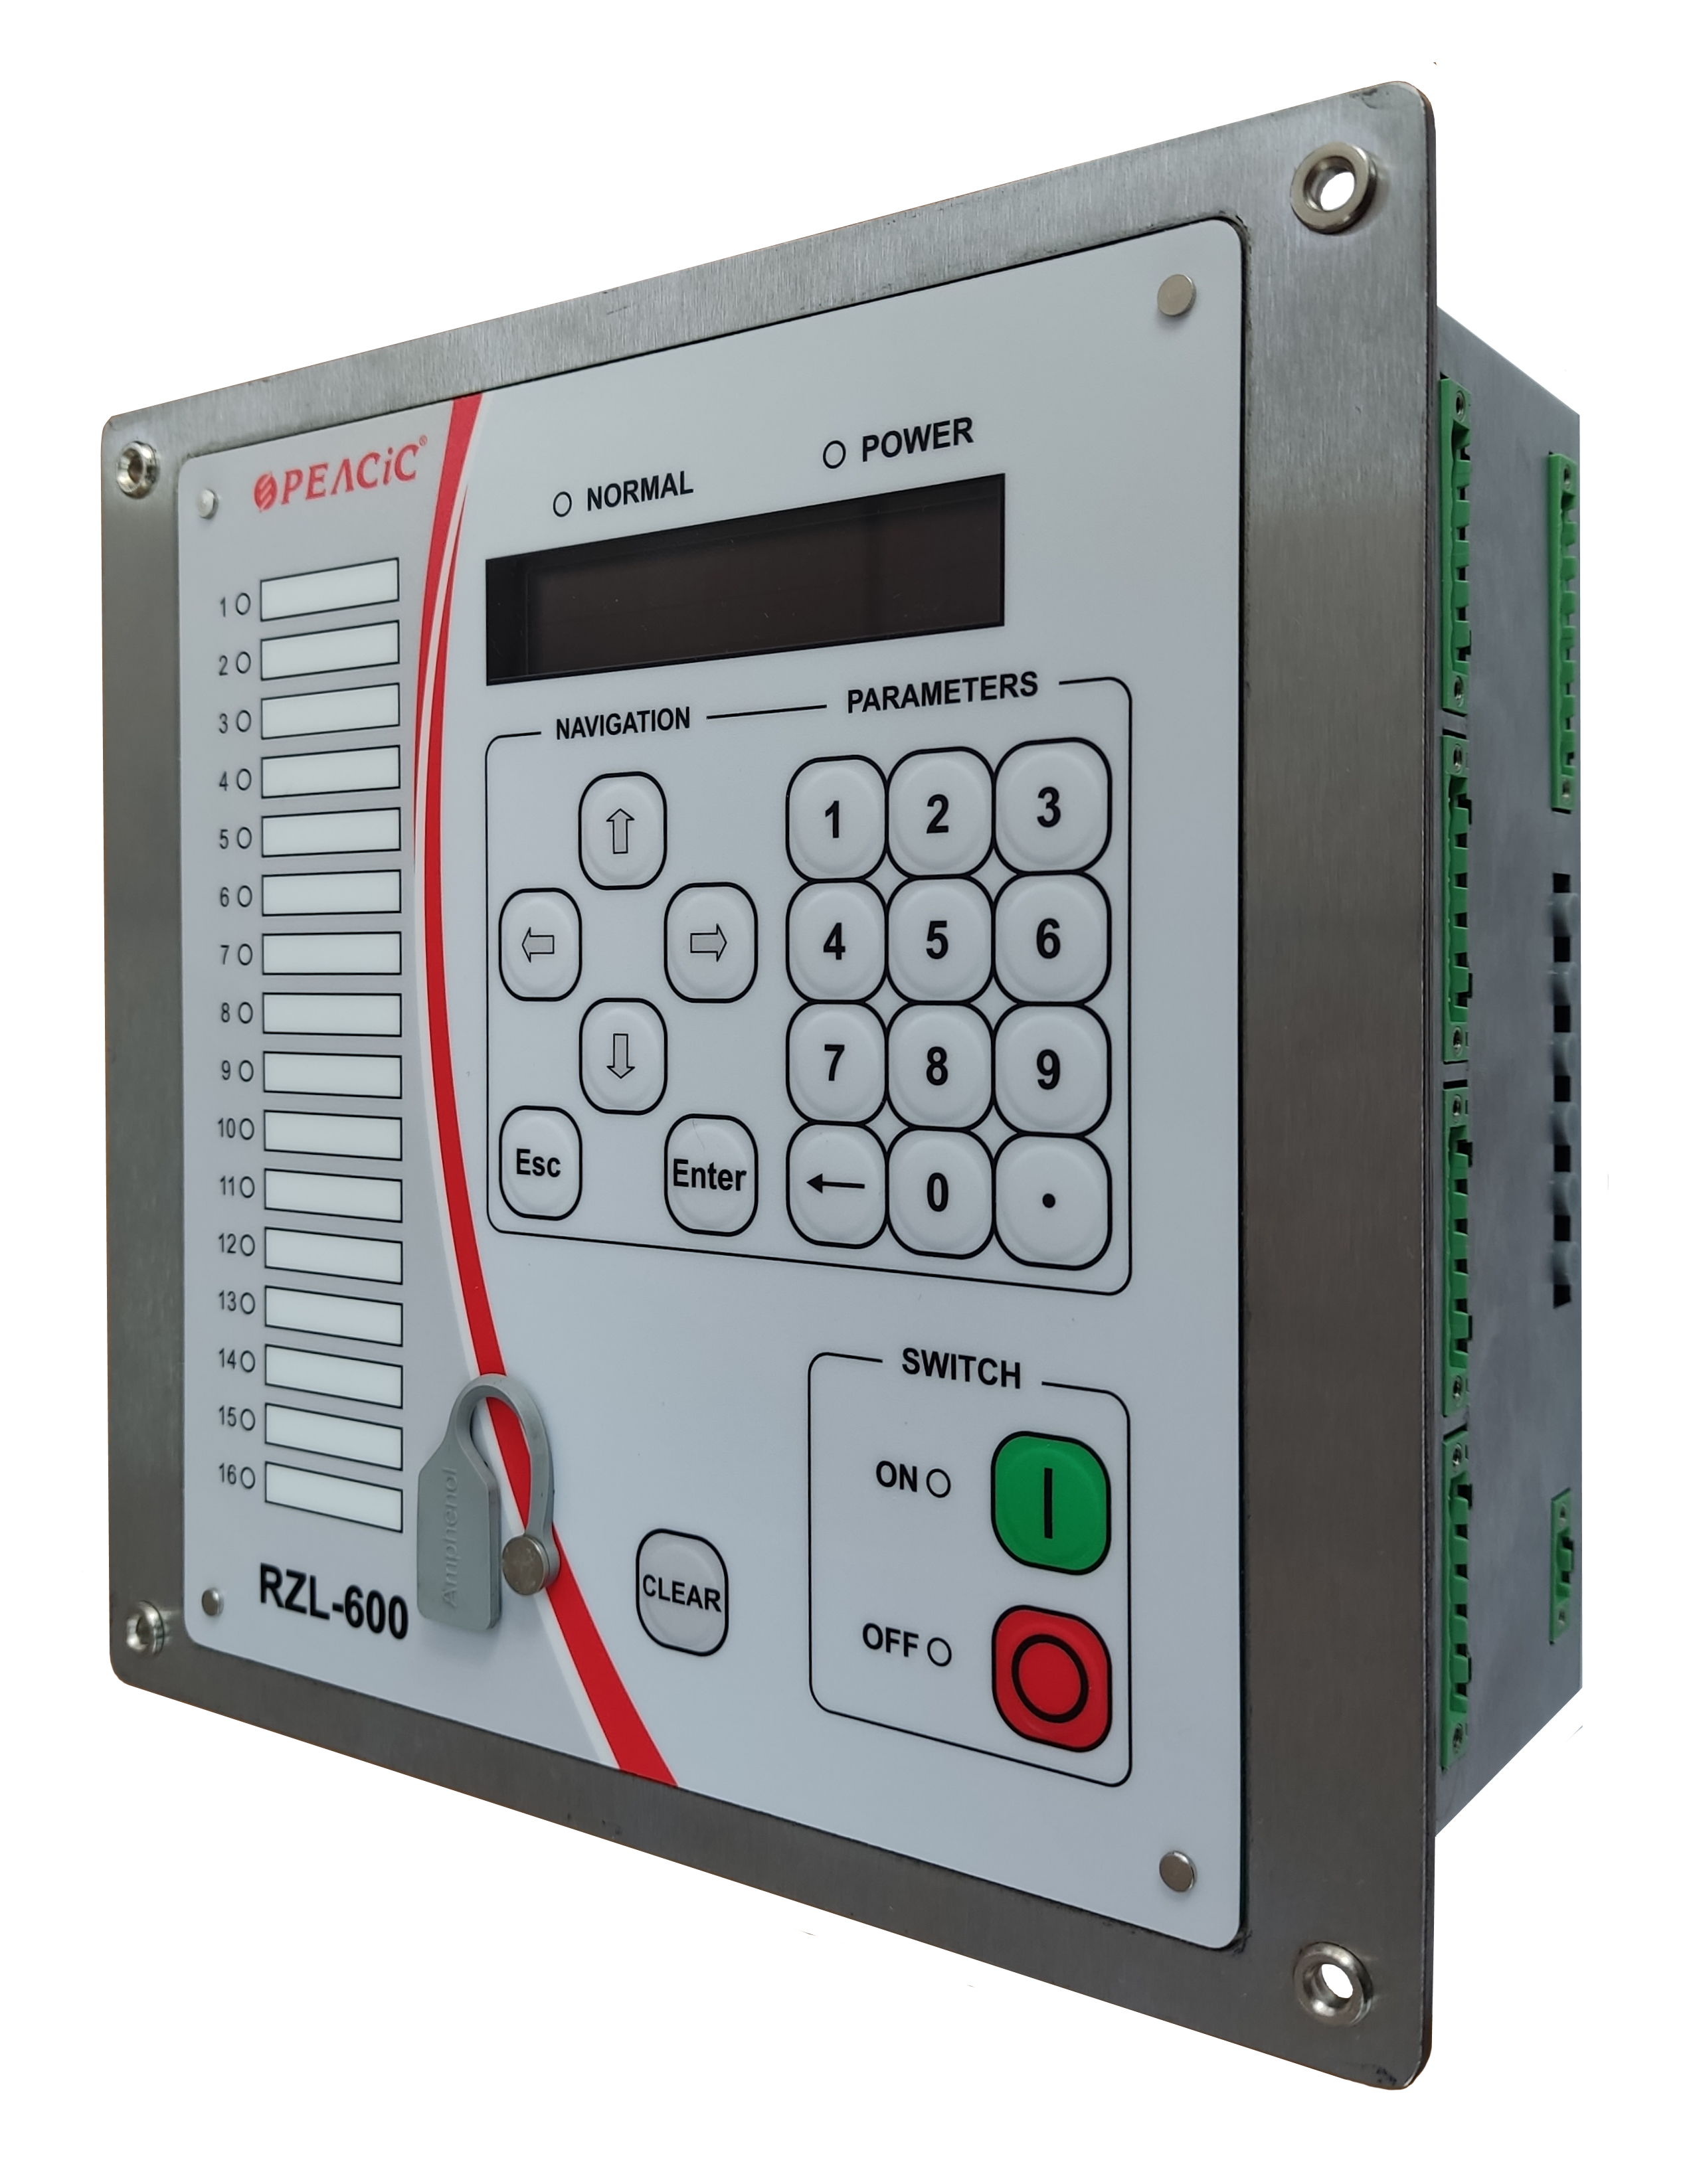 RZL-600 - устройство защиты, автоматики и контроля для подстанций и присоединений 6-154 кВ